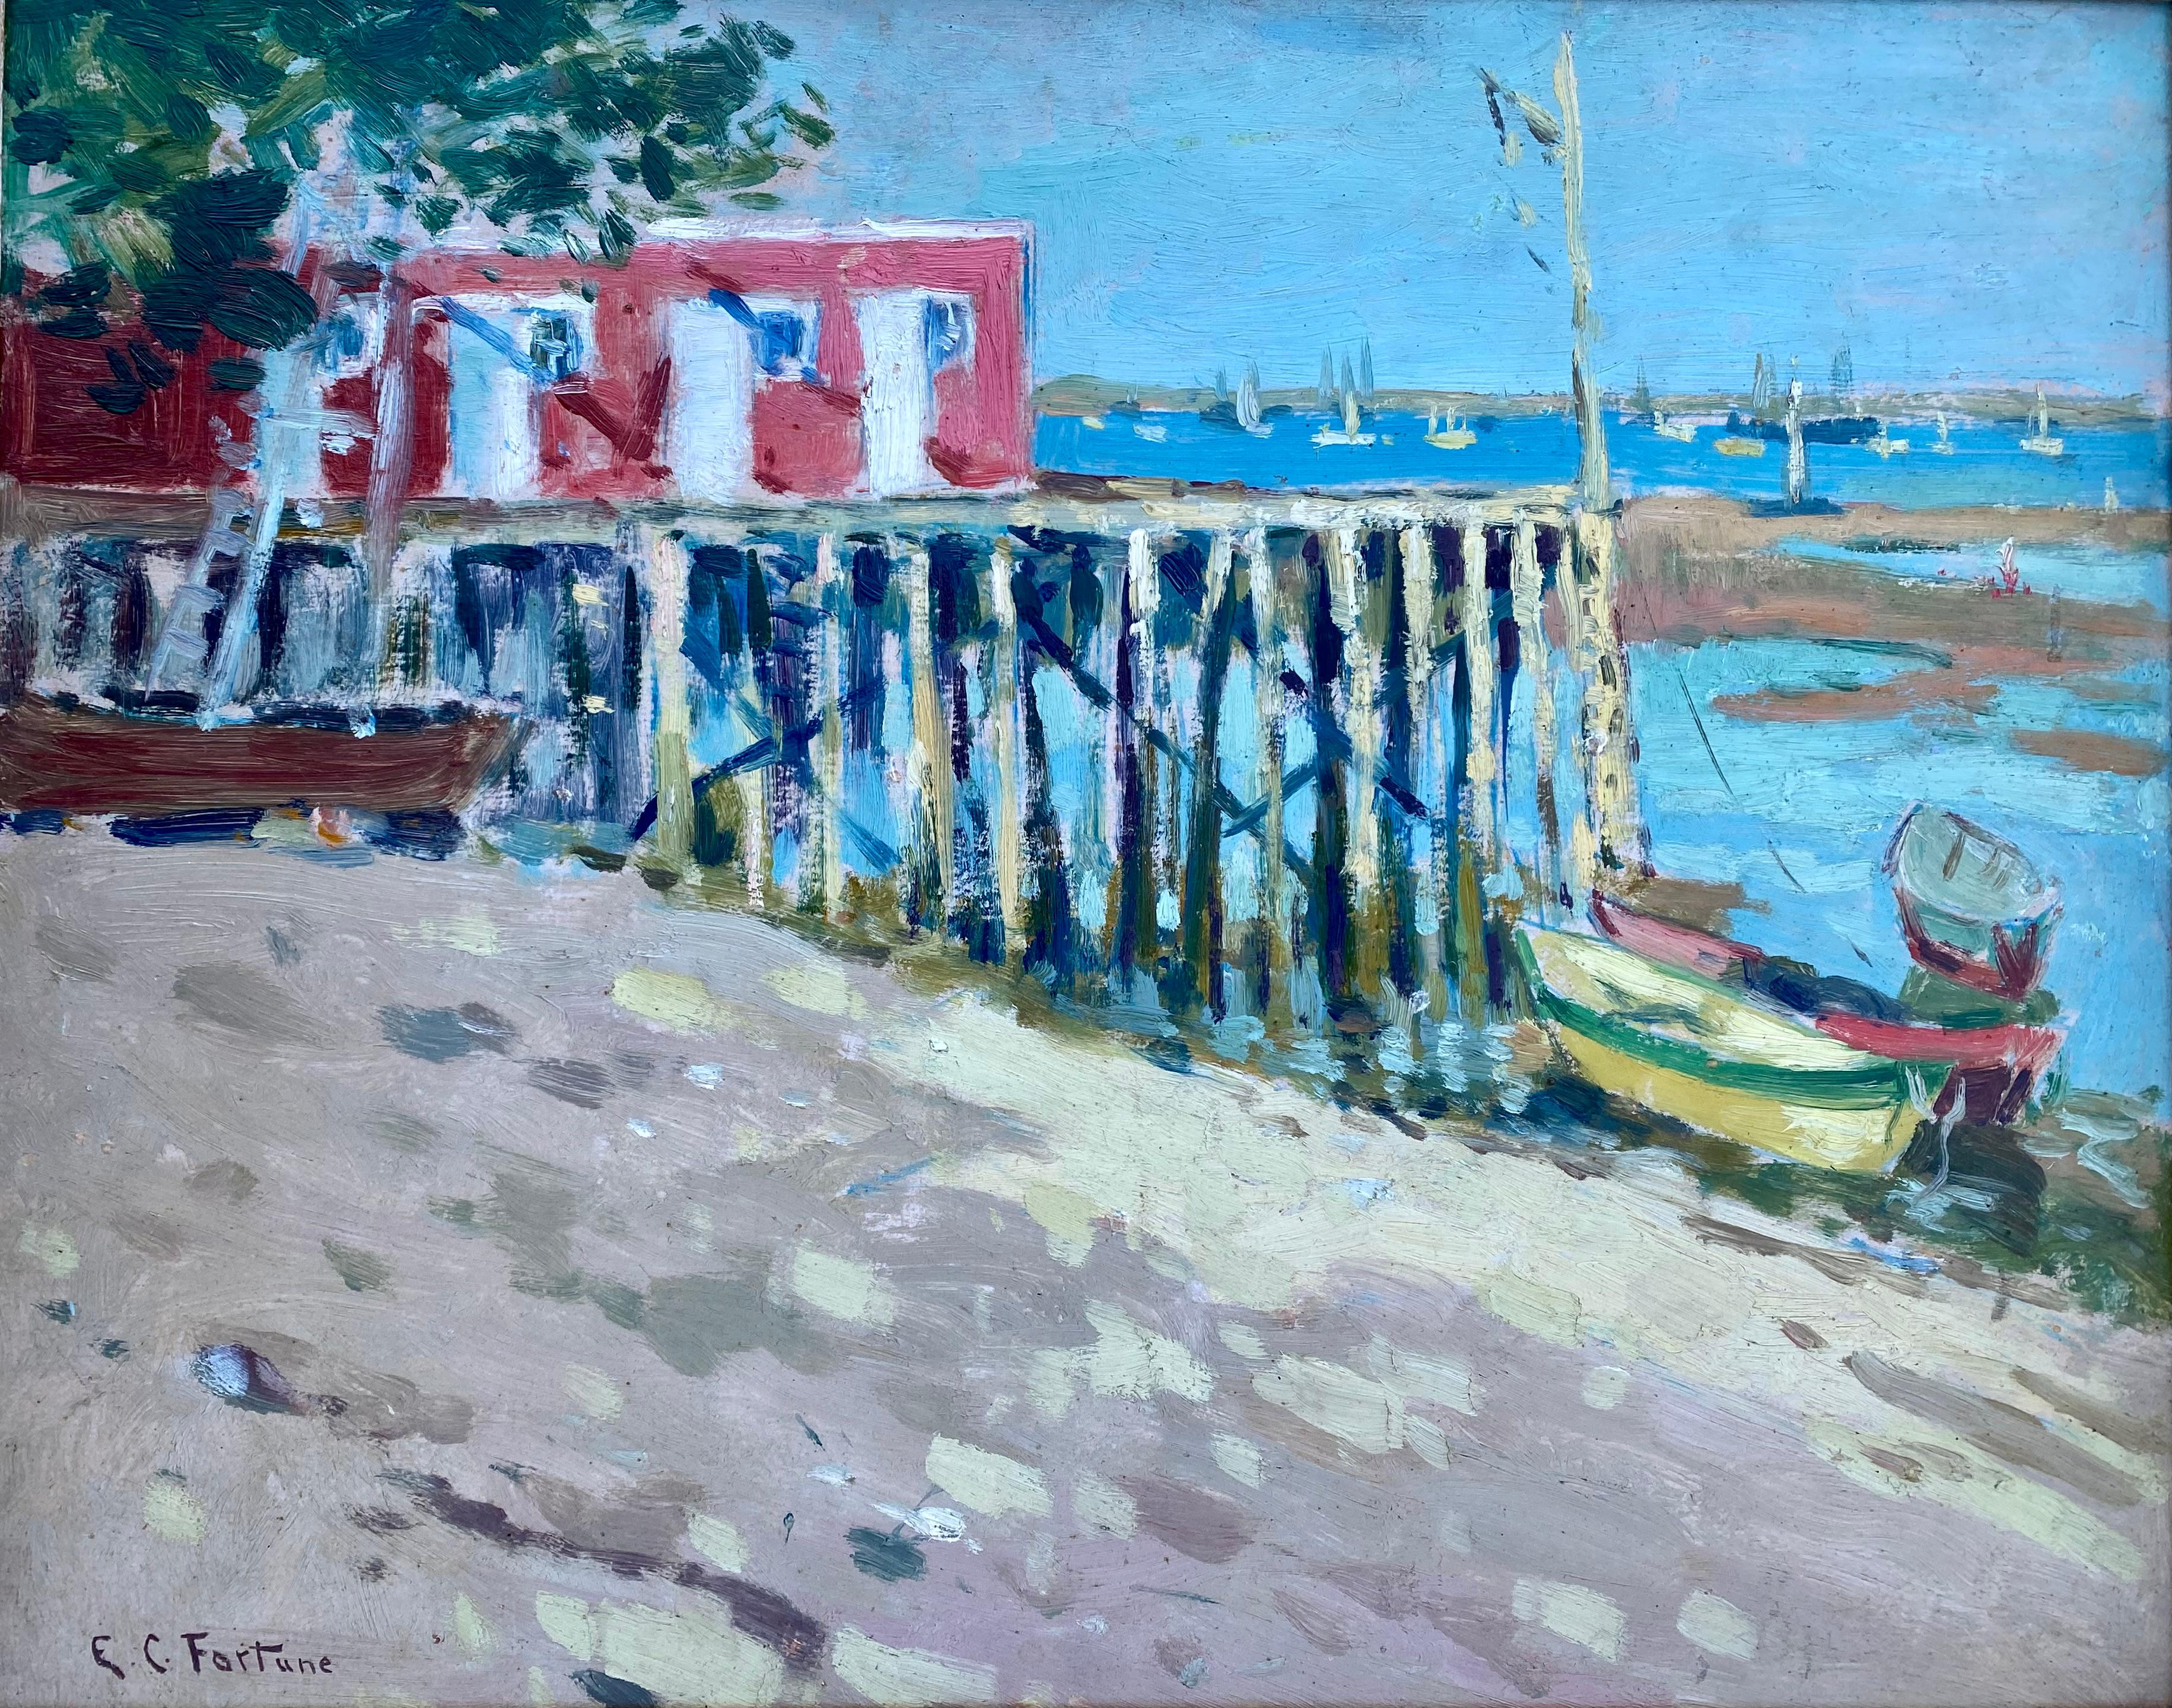 Fortune Euphemia Charlton, 1885 – 1969, American Painter, 'Monterey Beach' - Painting by FORTUNE Euphemia Charlton